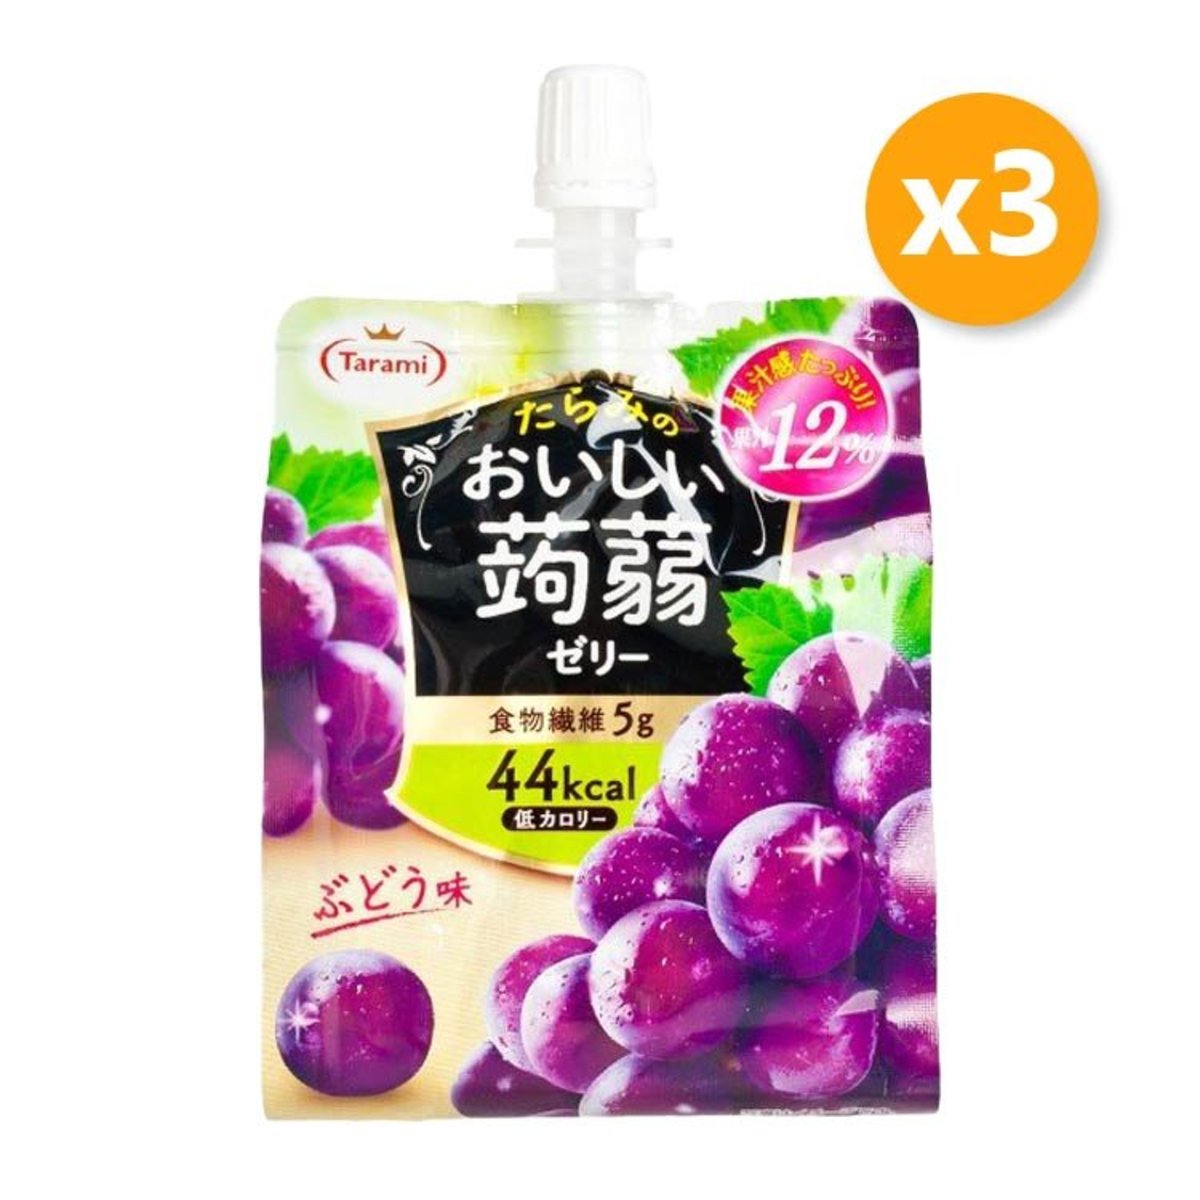 Tarami Oishii Konjac Jelly Grape Flavor 150g X 3pcs Hktvmall Online Shopping